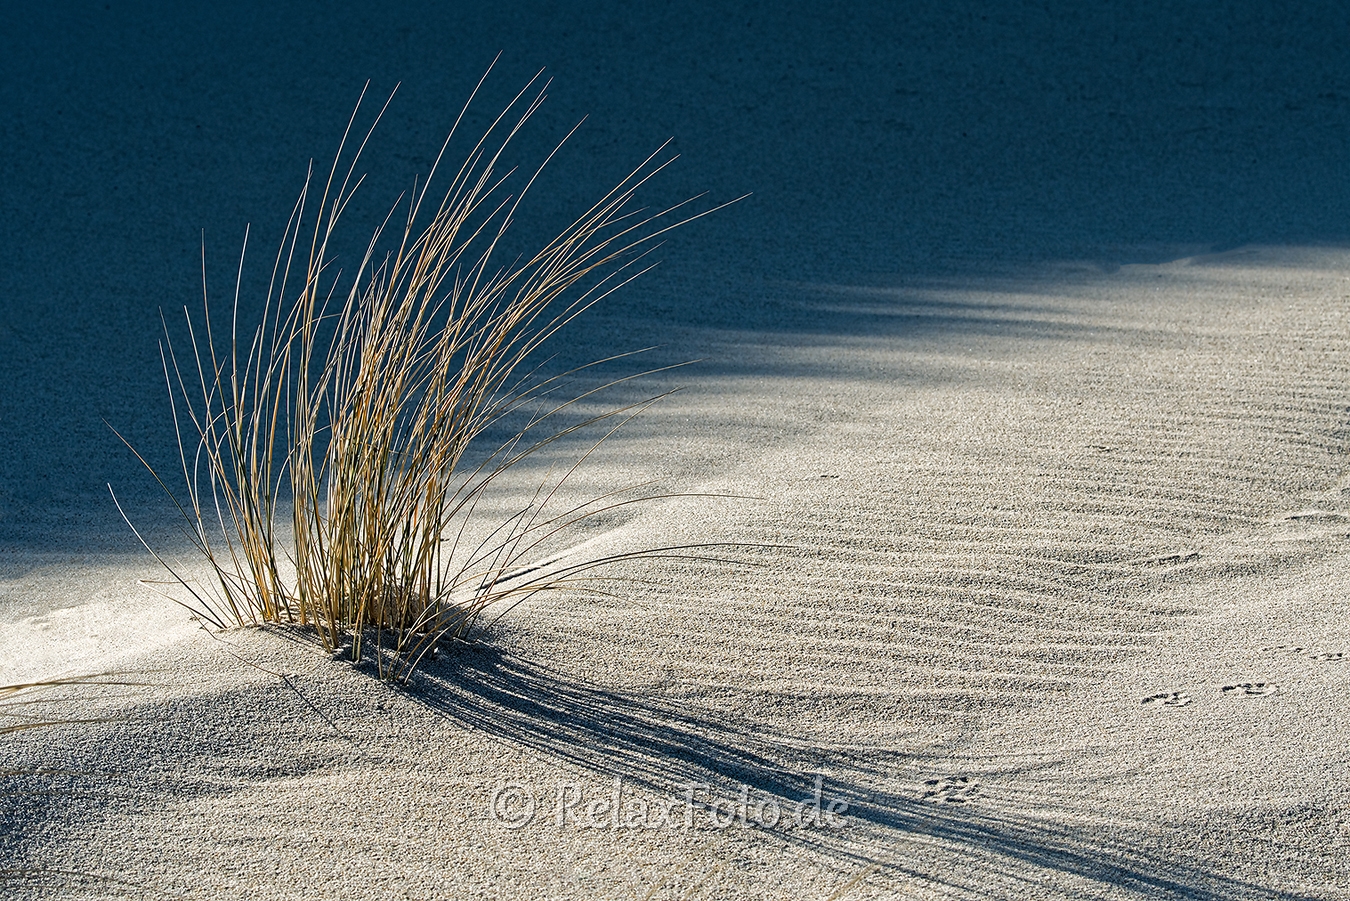 Ellenbogen-Duenen-Sand-Sylt-Winter-Bilder-Fotos-Strand-Landschaften-A_NIK500_2464